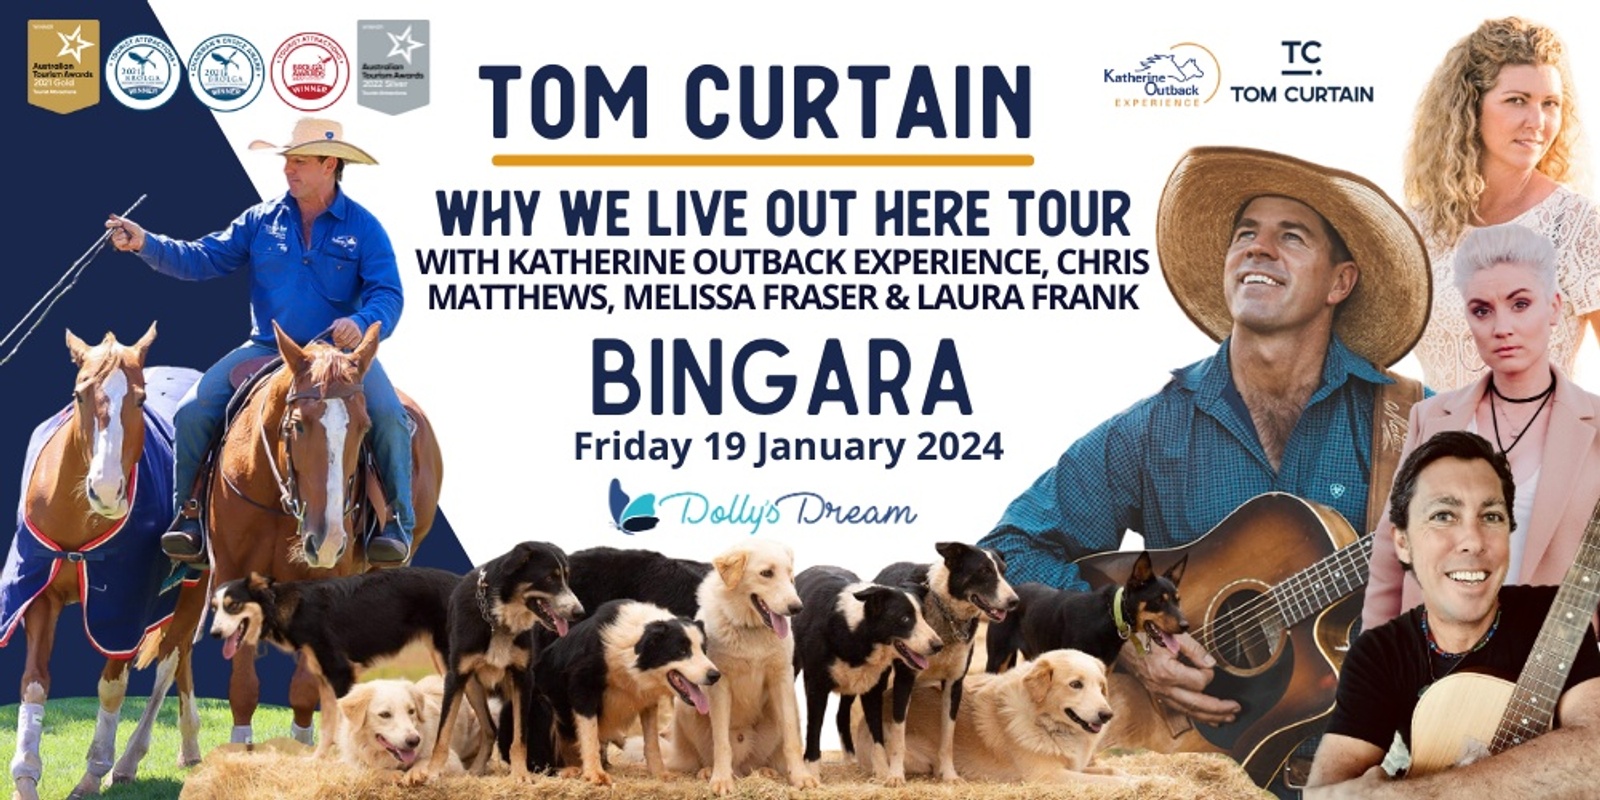 Banner image for Tom Curtain Tour - BINGARA NSW